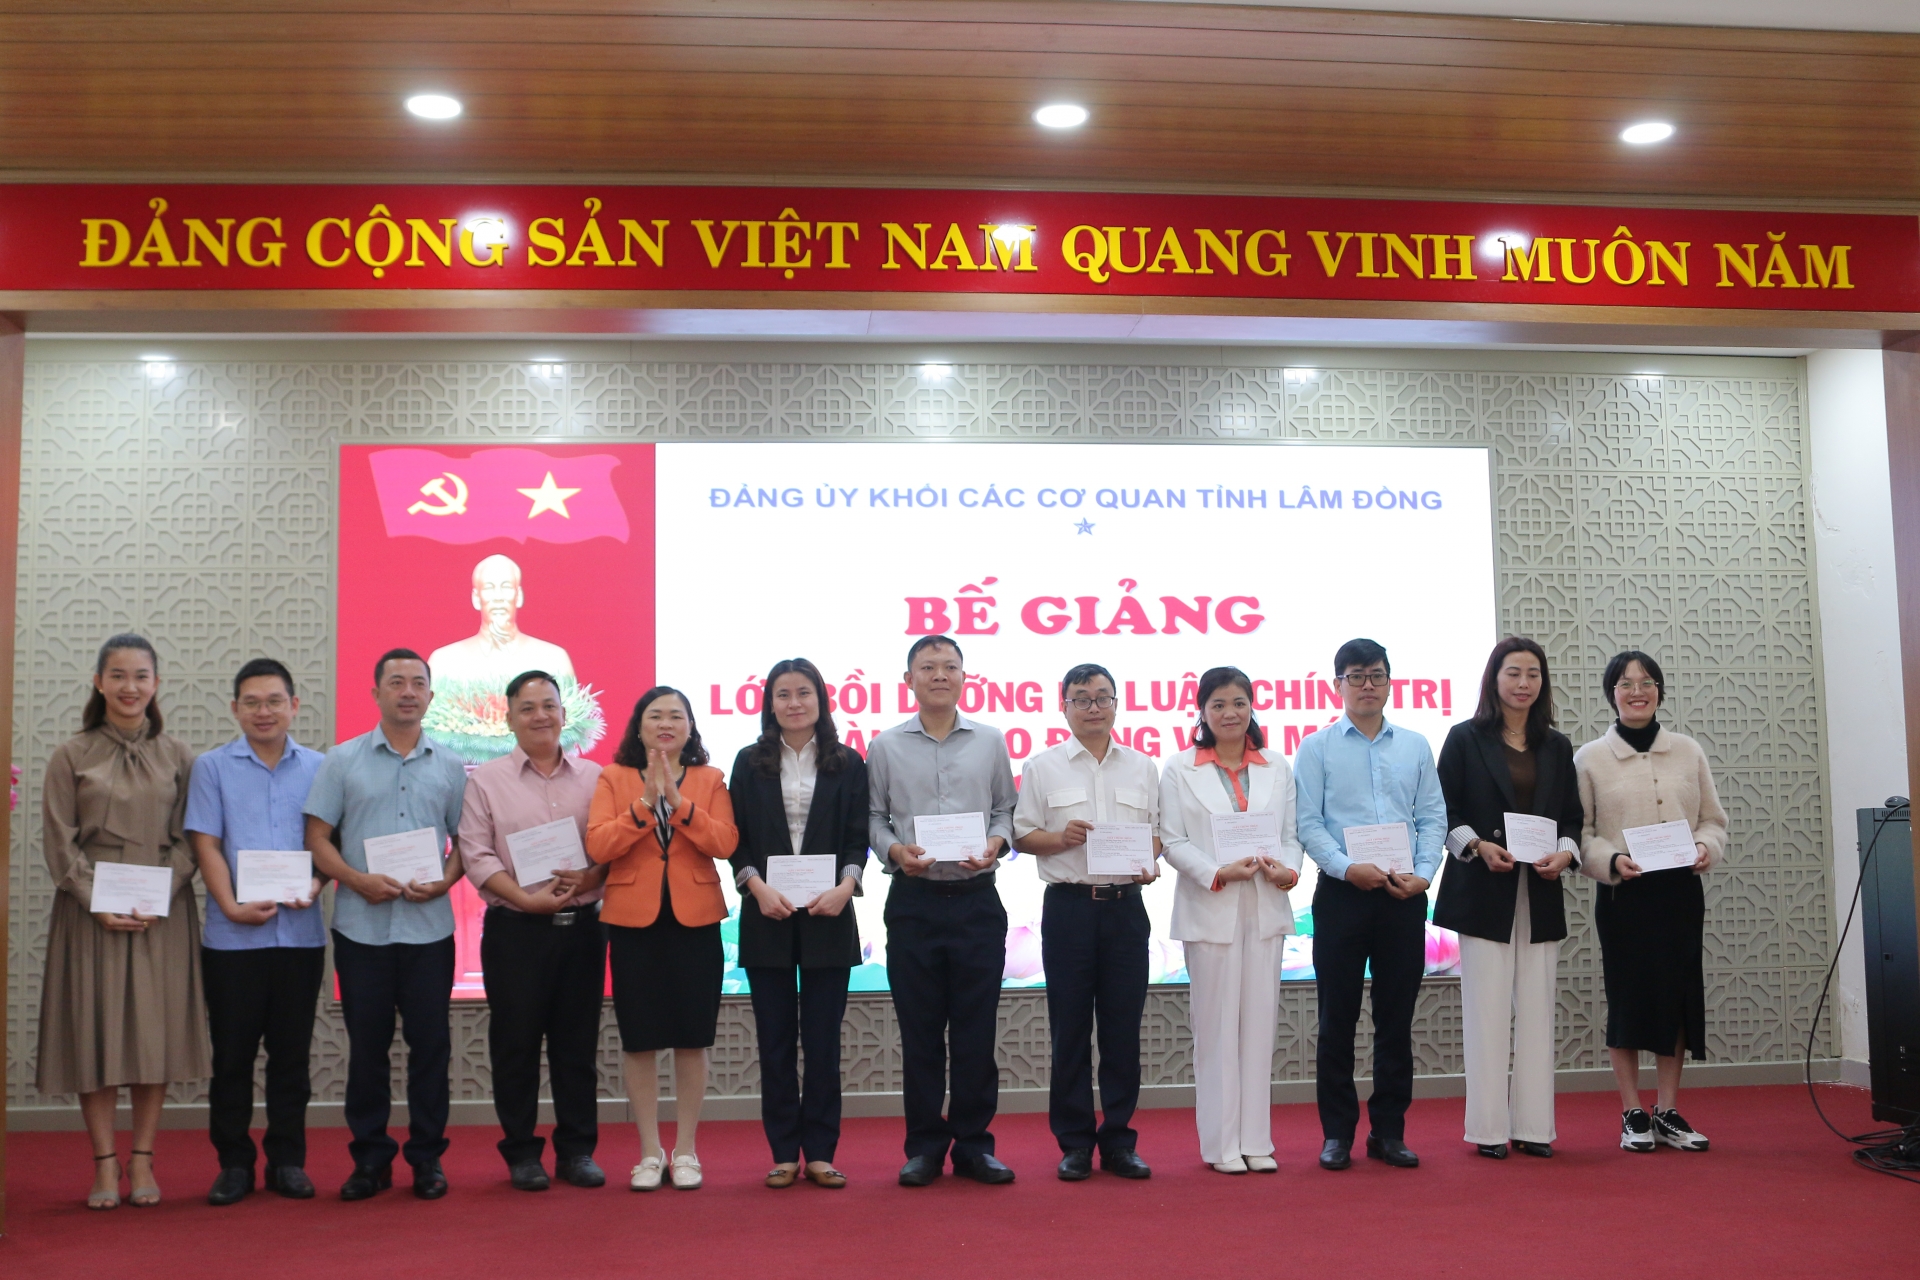 Đồng chí Nguyễn Thị Phương Thảo - Phó Bí thư Thường trực Đảng ủy Khối trao giấy chứng 